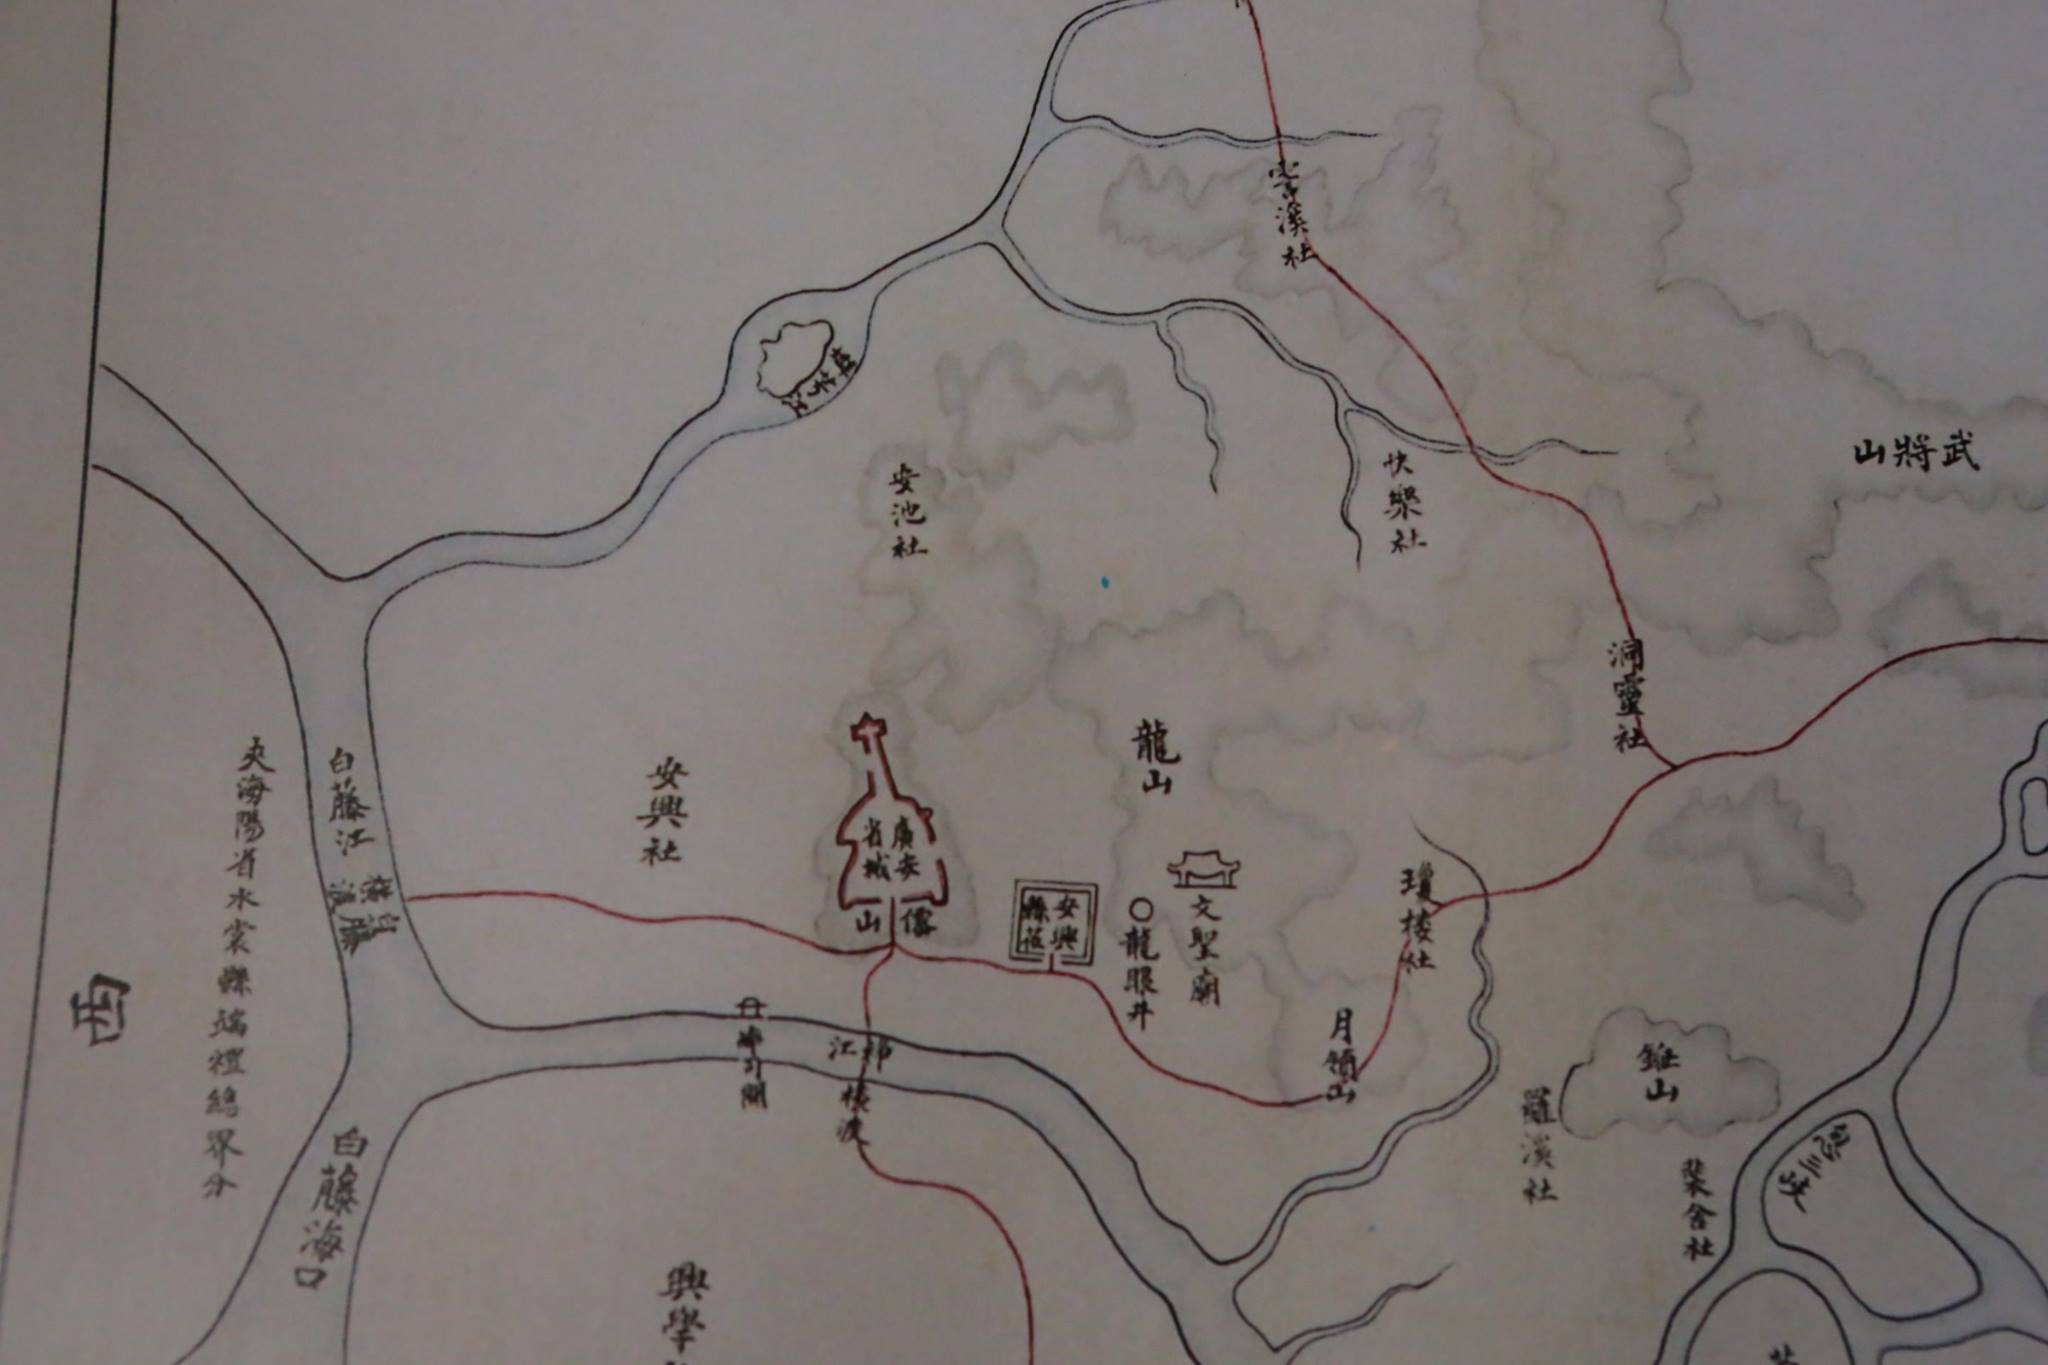 Thành Trong một tờ bản đồ huyện Yên Hưng vẽ thời vua Đồng Khánh thành Quảng Yên giống cây đàn ghi ta.